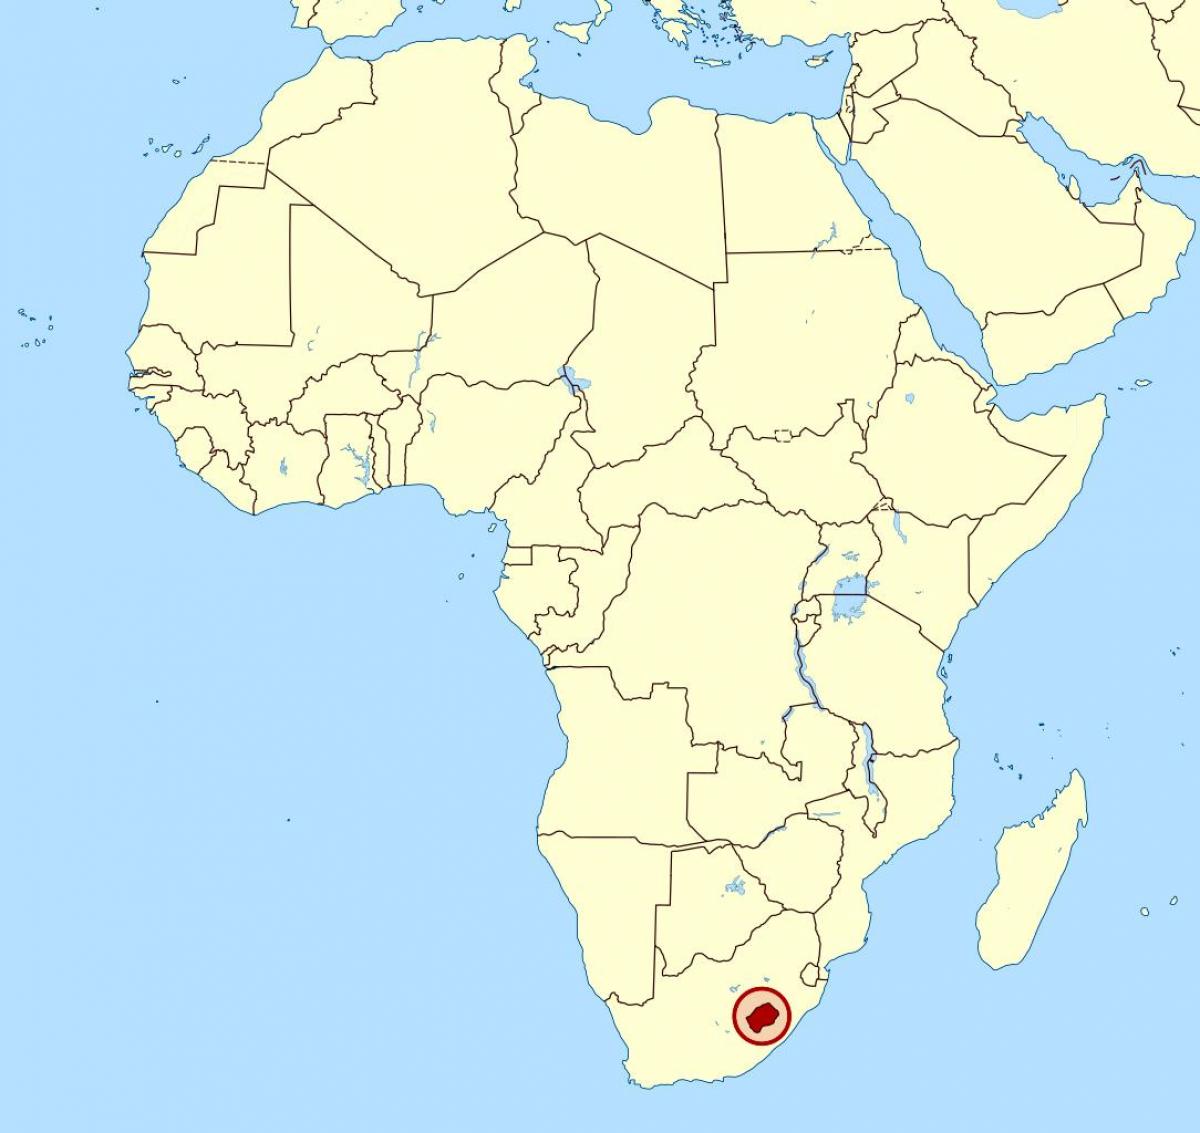 térkép Lesotho a térkép afrika